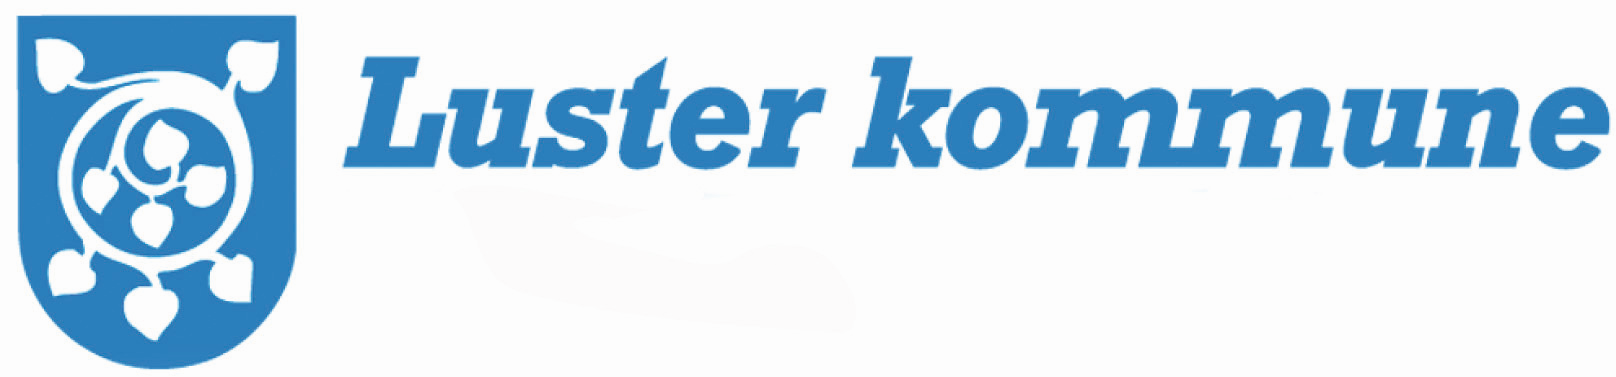 Luster kommune logo